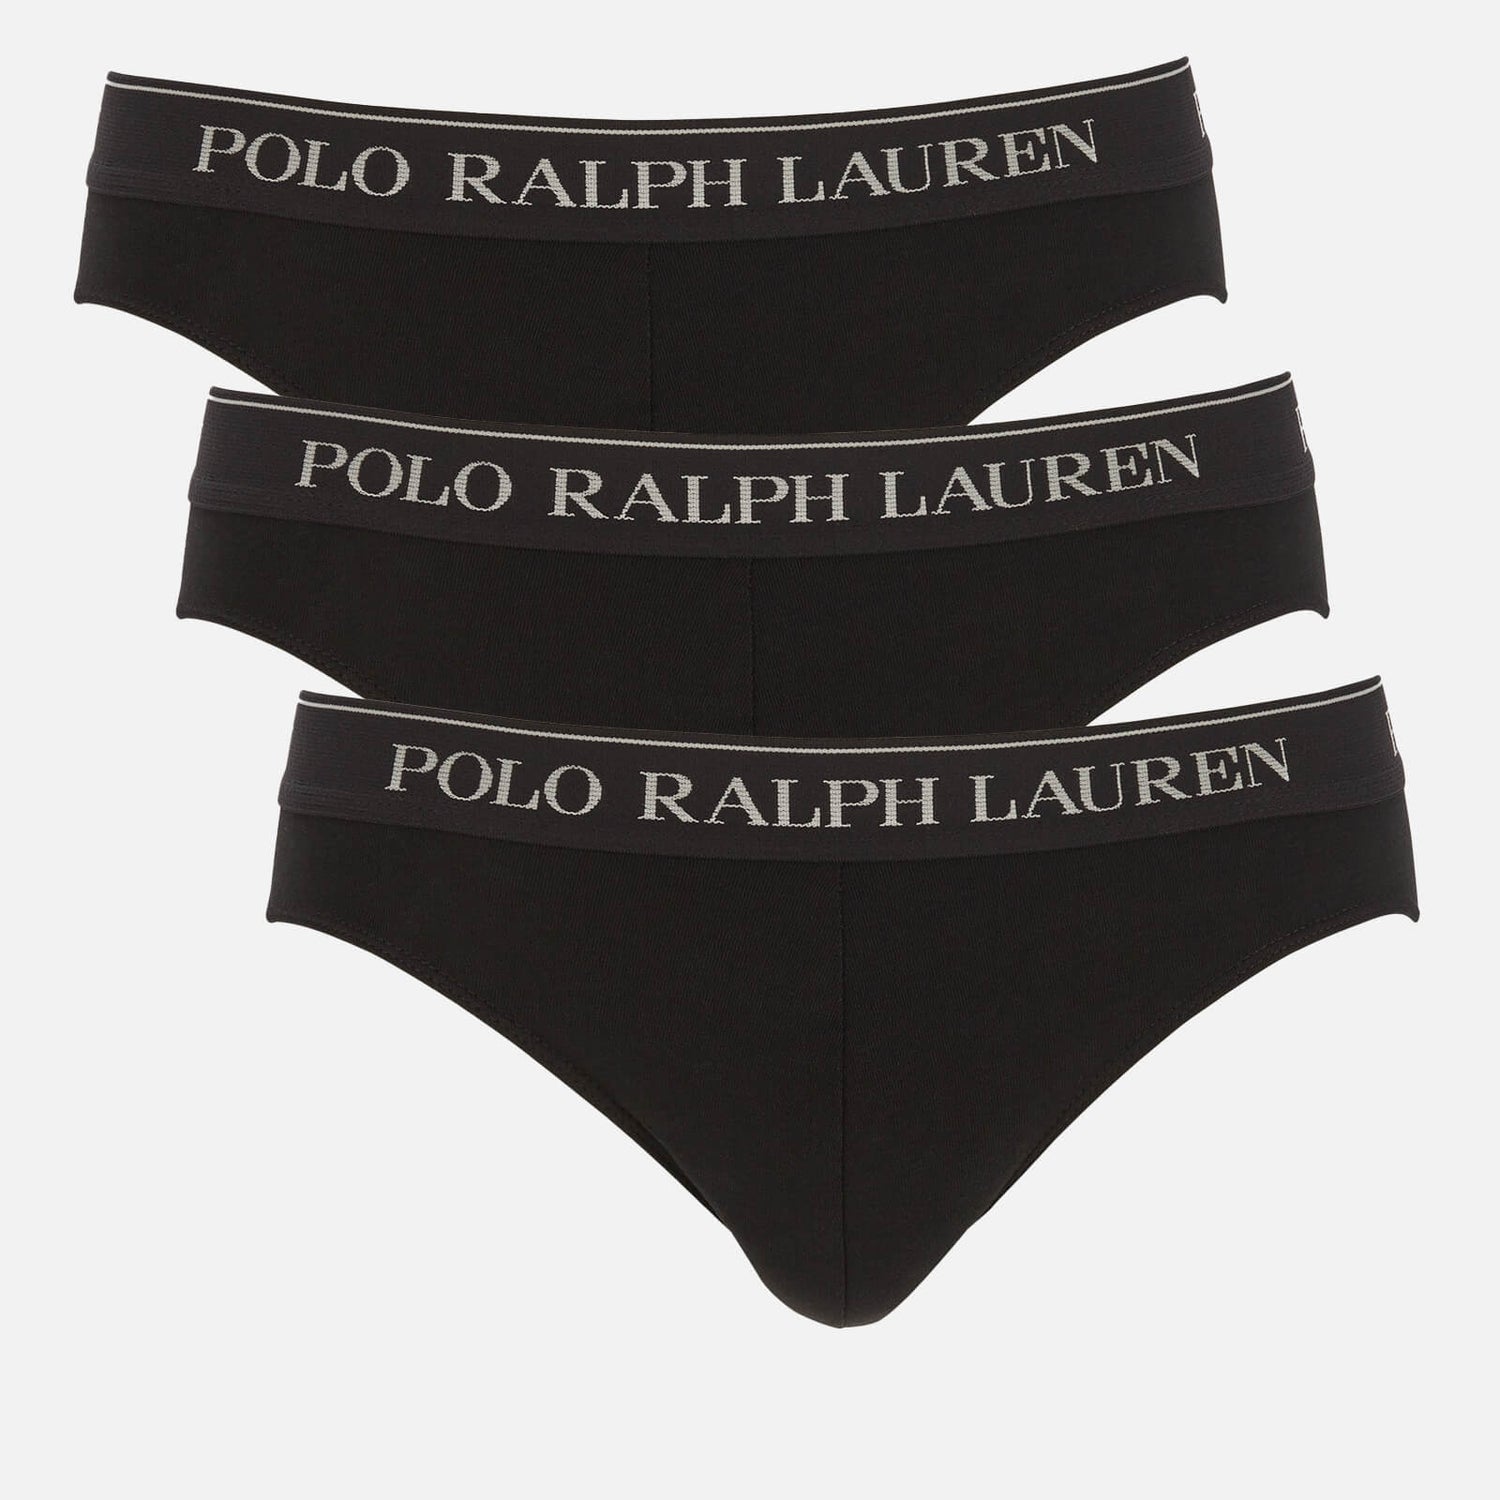 Polo Ralph Lauren Men's 3-Pack Low Rise Briefs - Polo Black - S